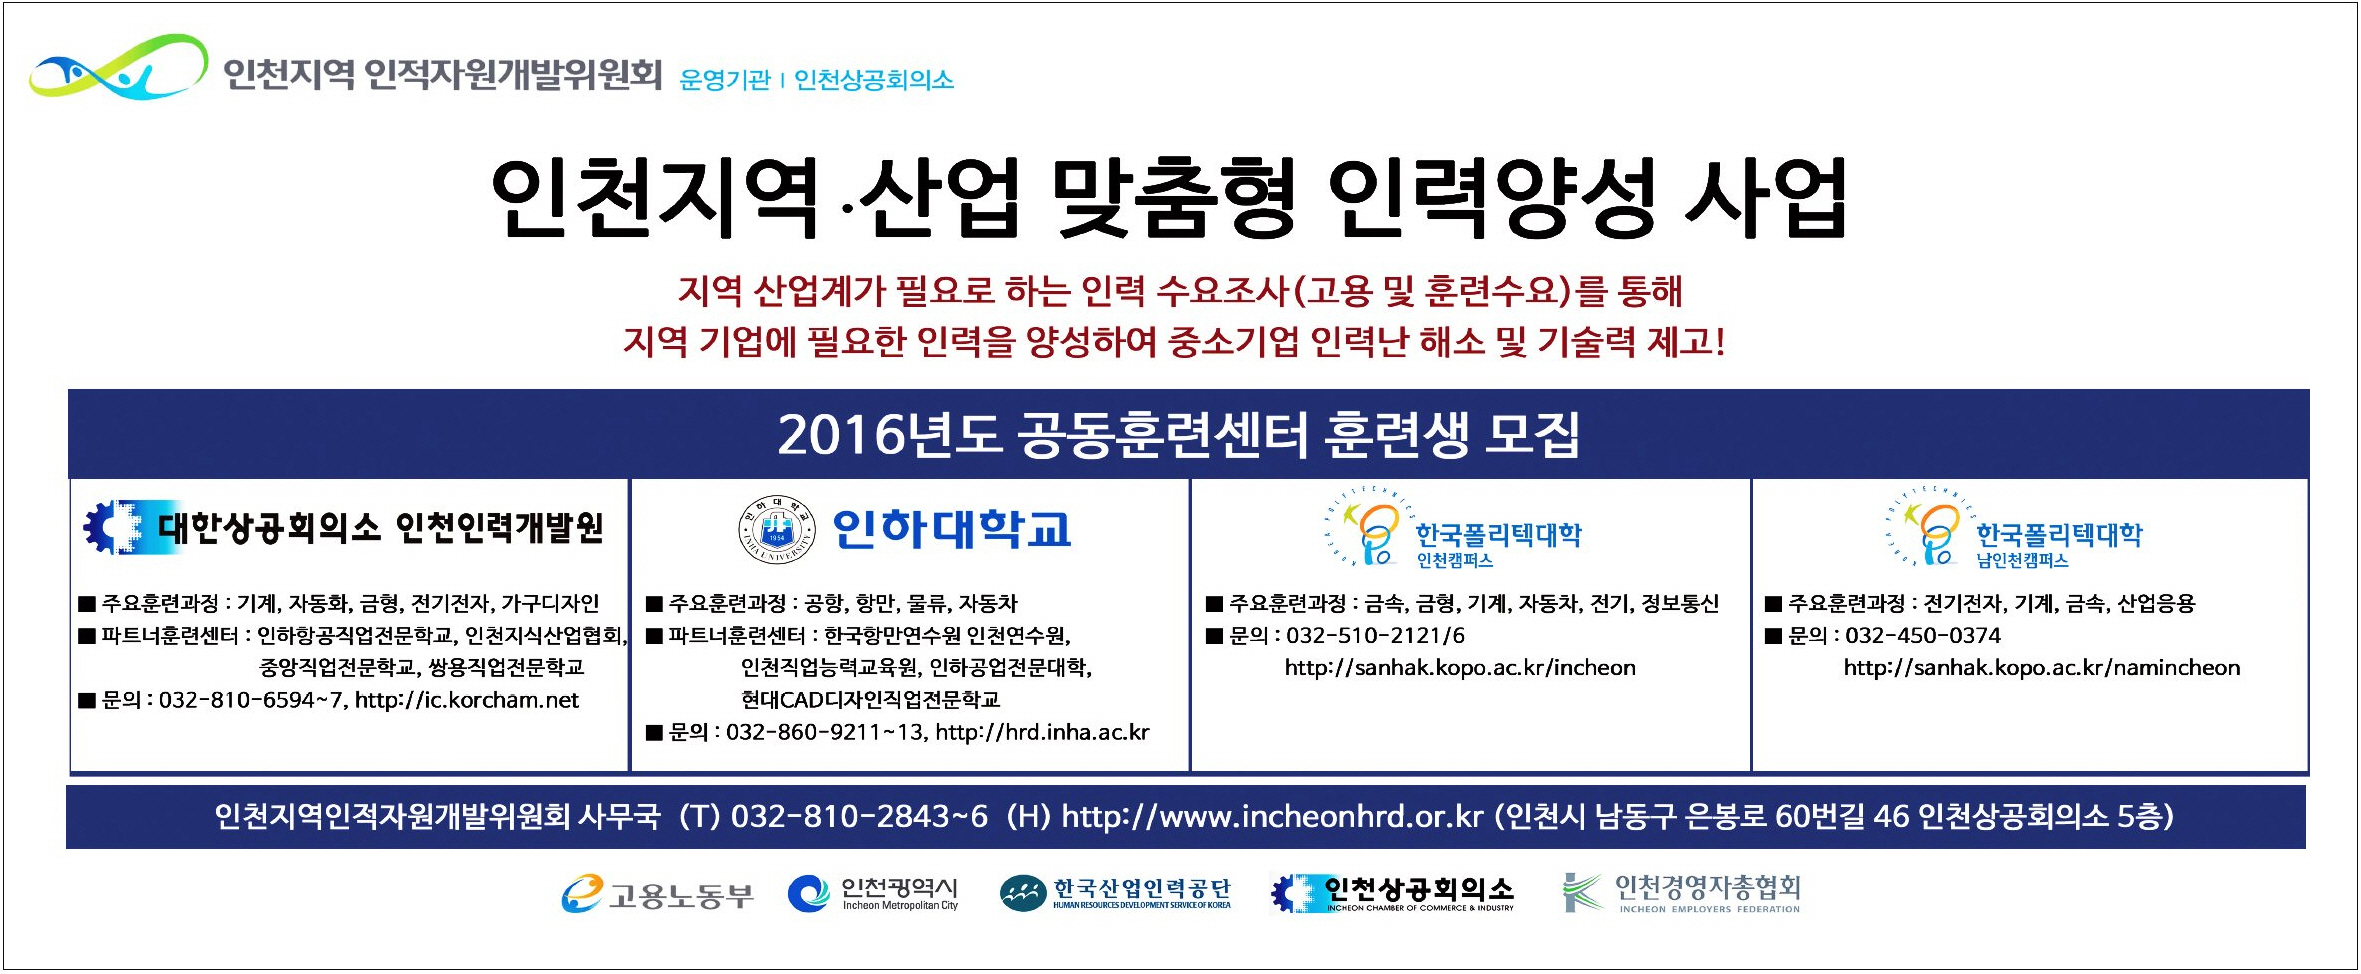 160325 (인천일보) 인천지역ㆍ산업 맞춤형 인력양성 사업 신문광고의 1번째 이미지